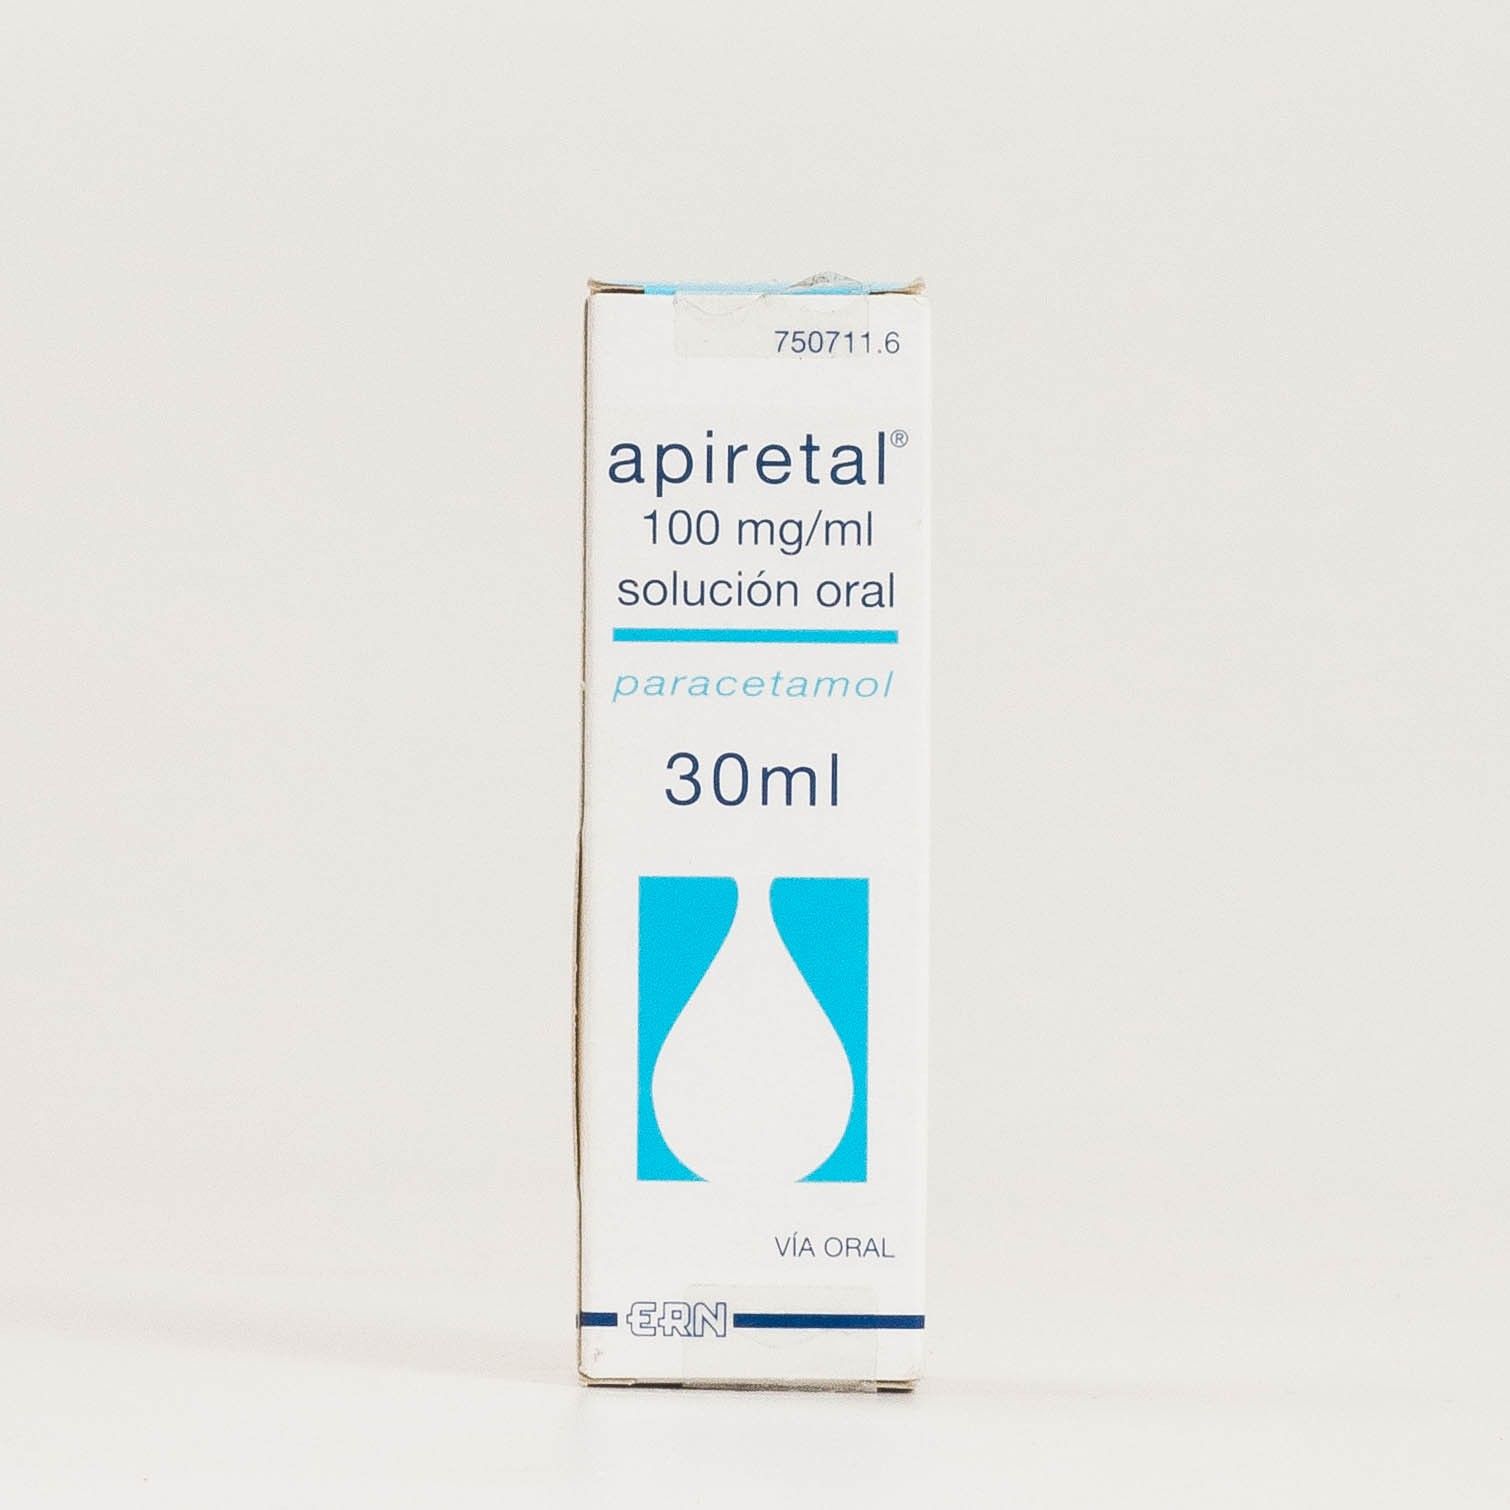 Apiretal 100mg/ml 30ml solución oral